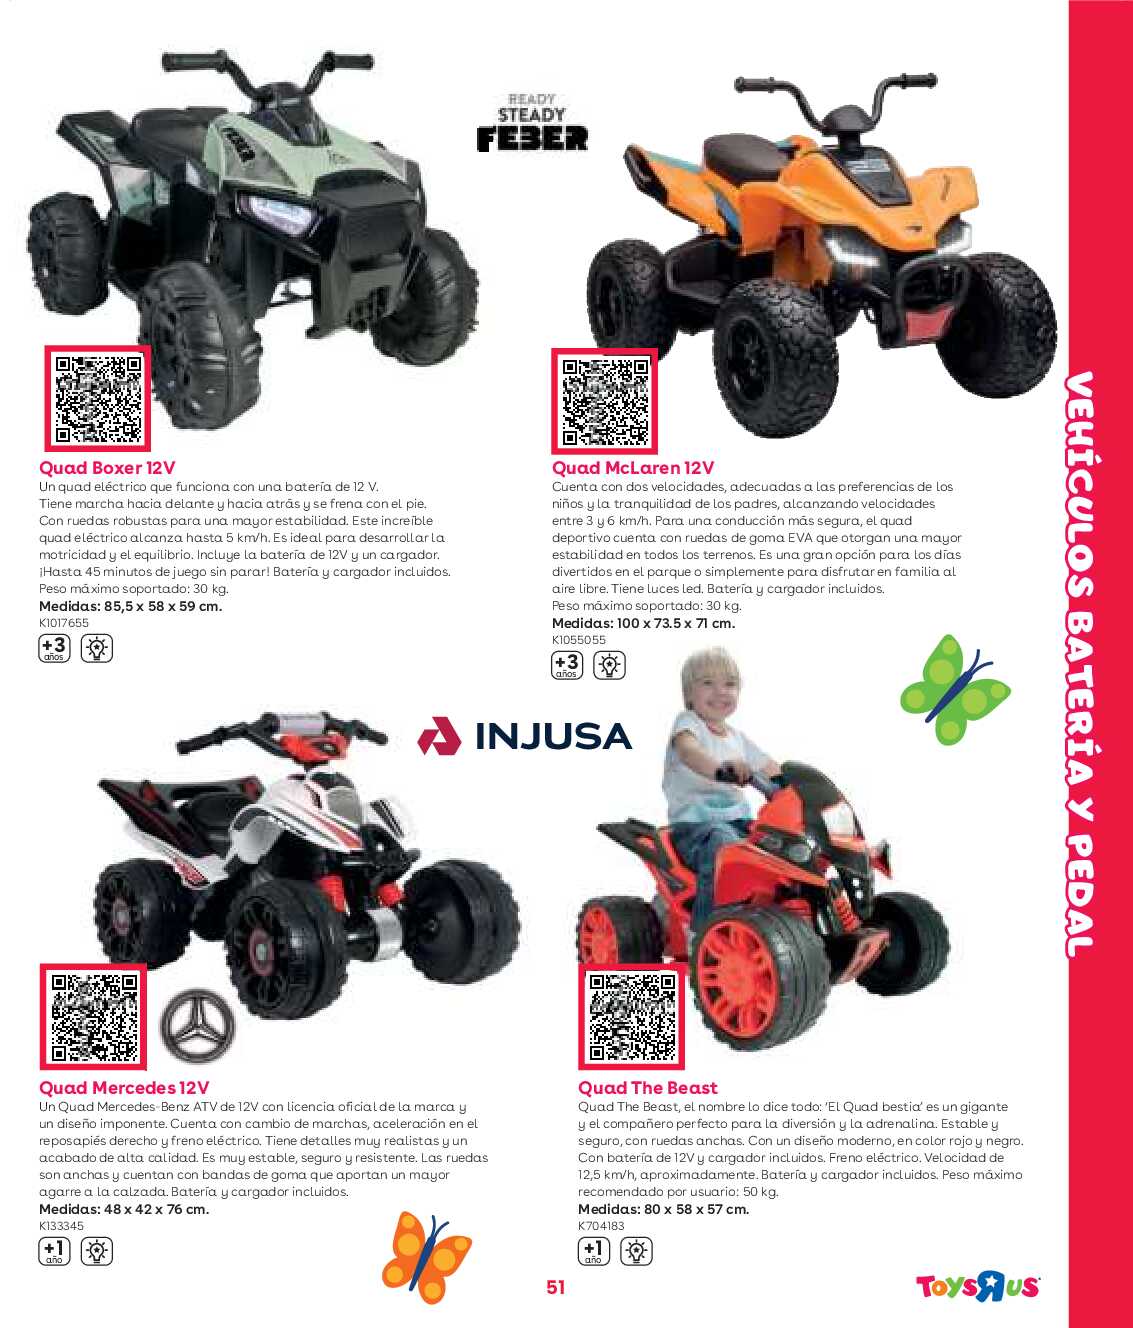 Guía aire libre Toys R Us. Página 51